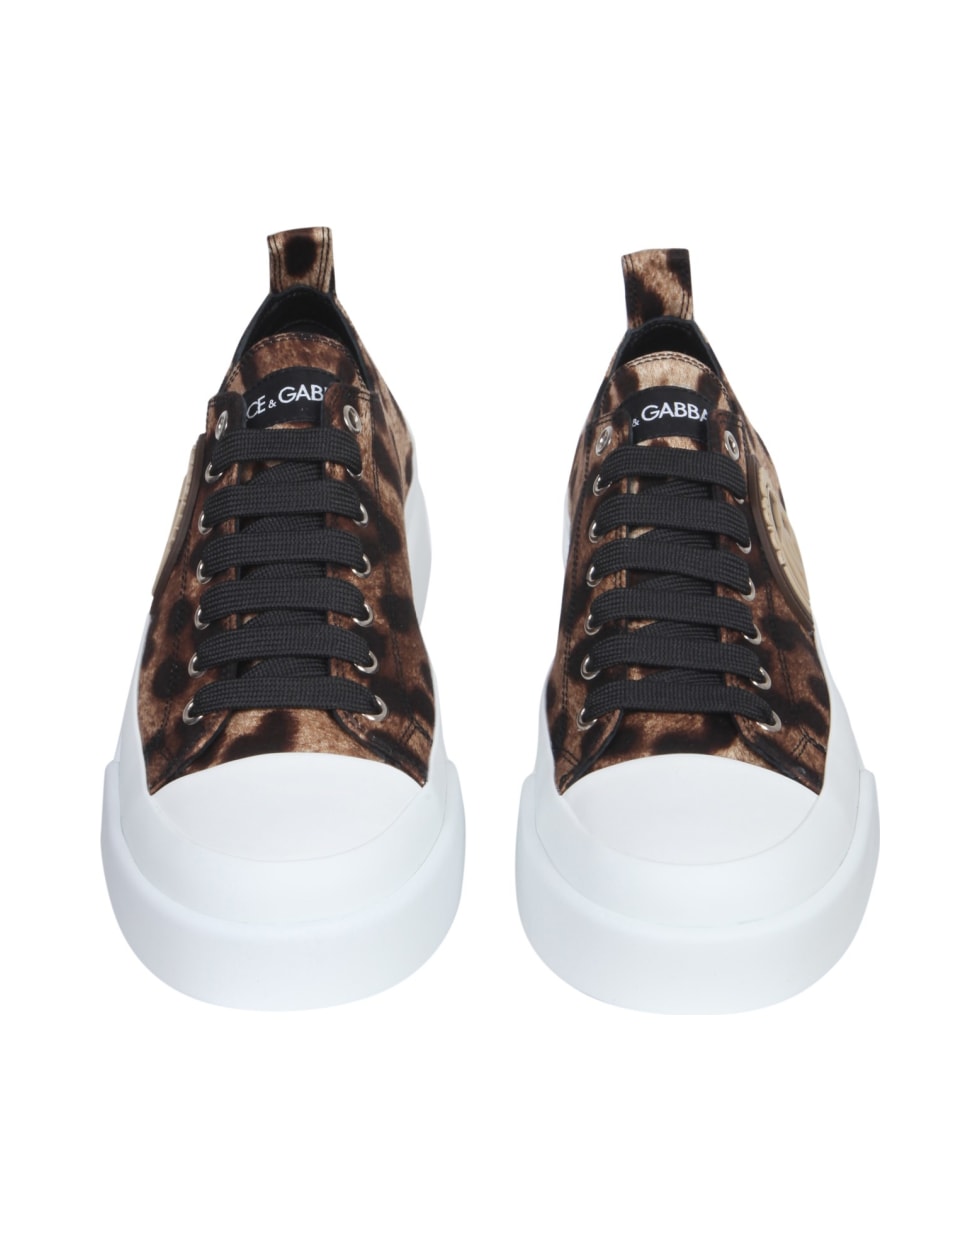 Dolce & Gabbana Portofino Light Sneakers - Leopardato